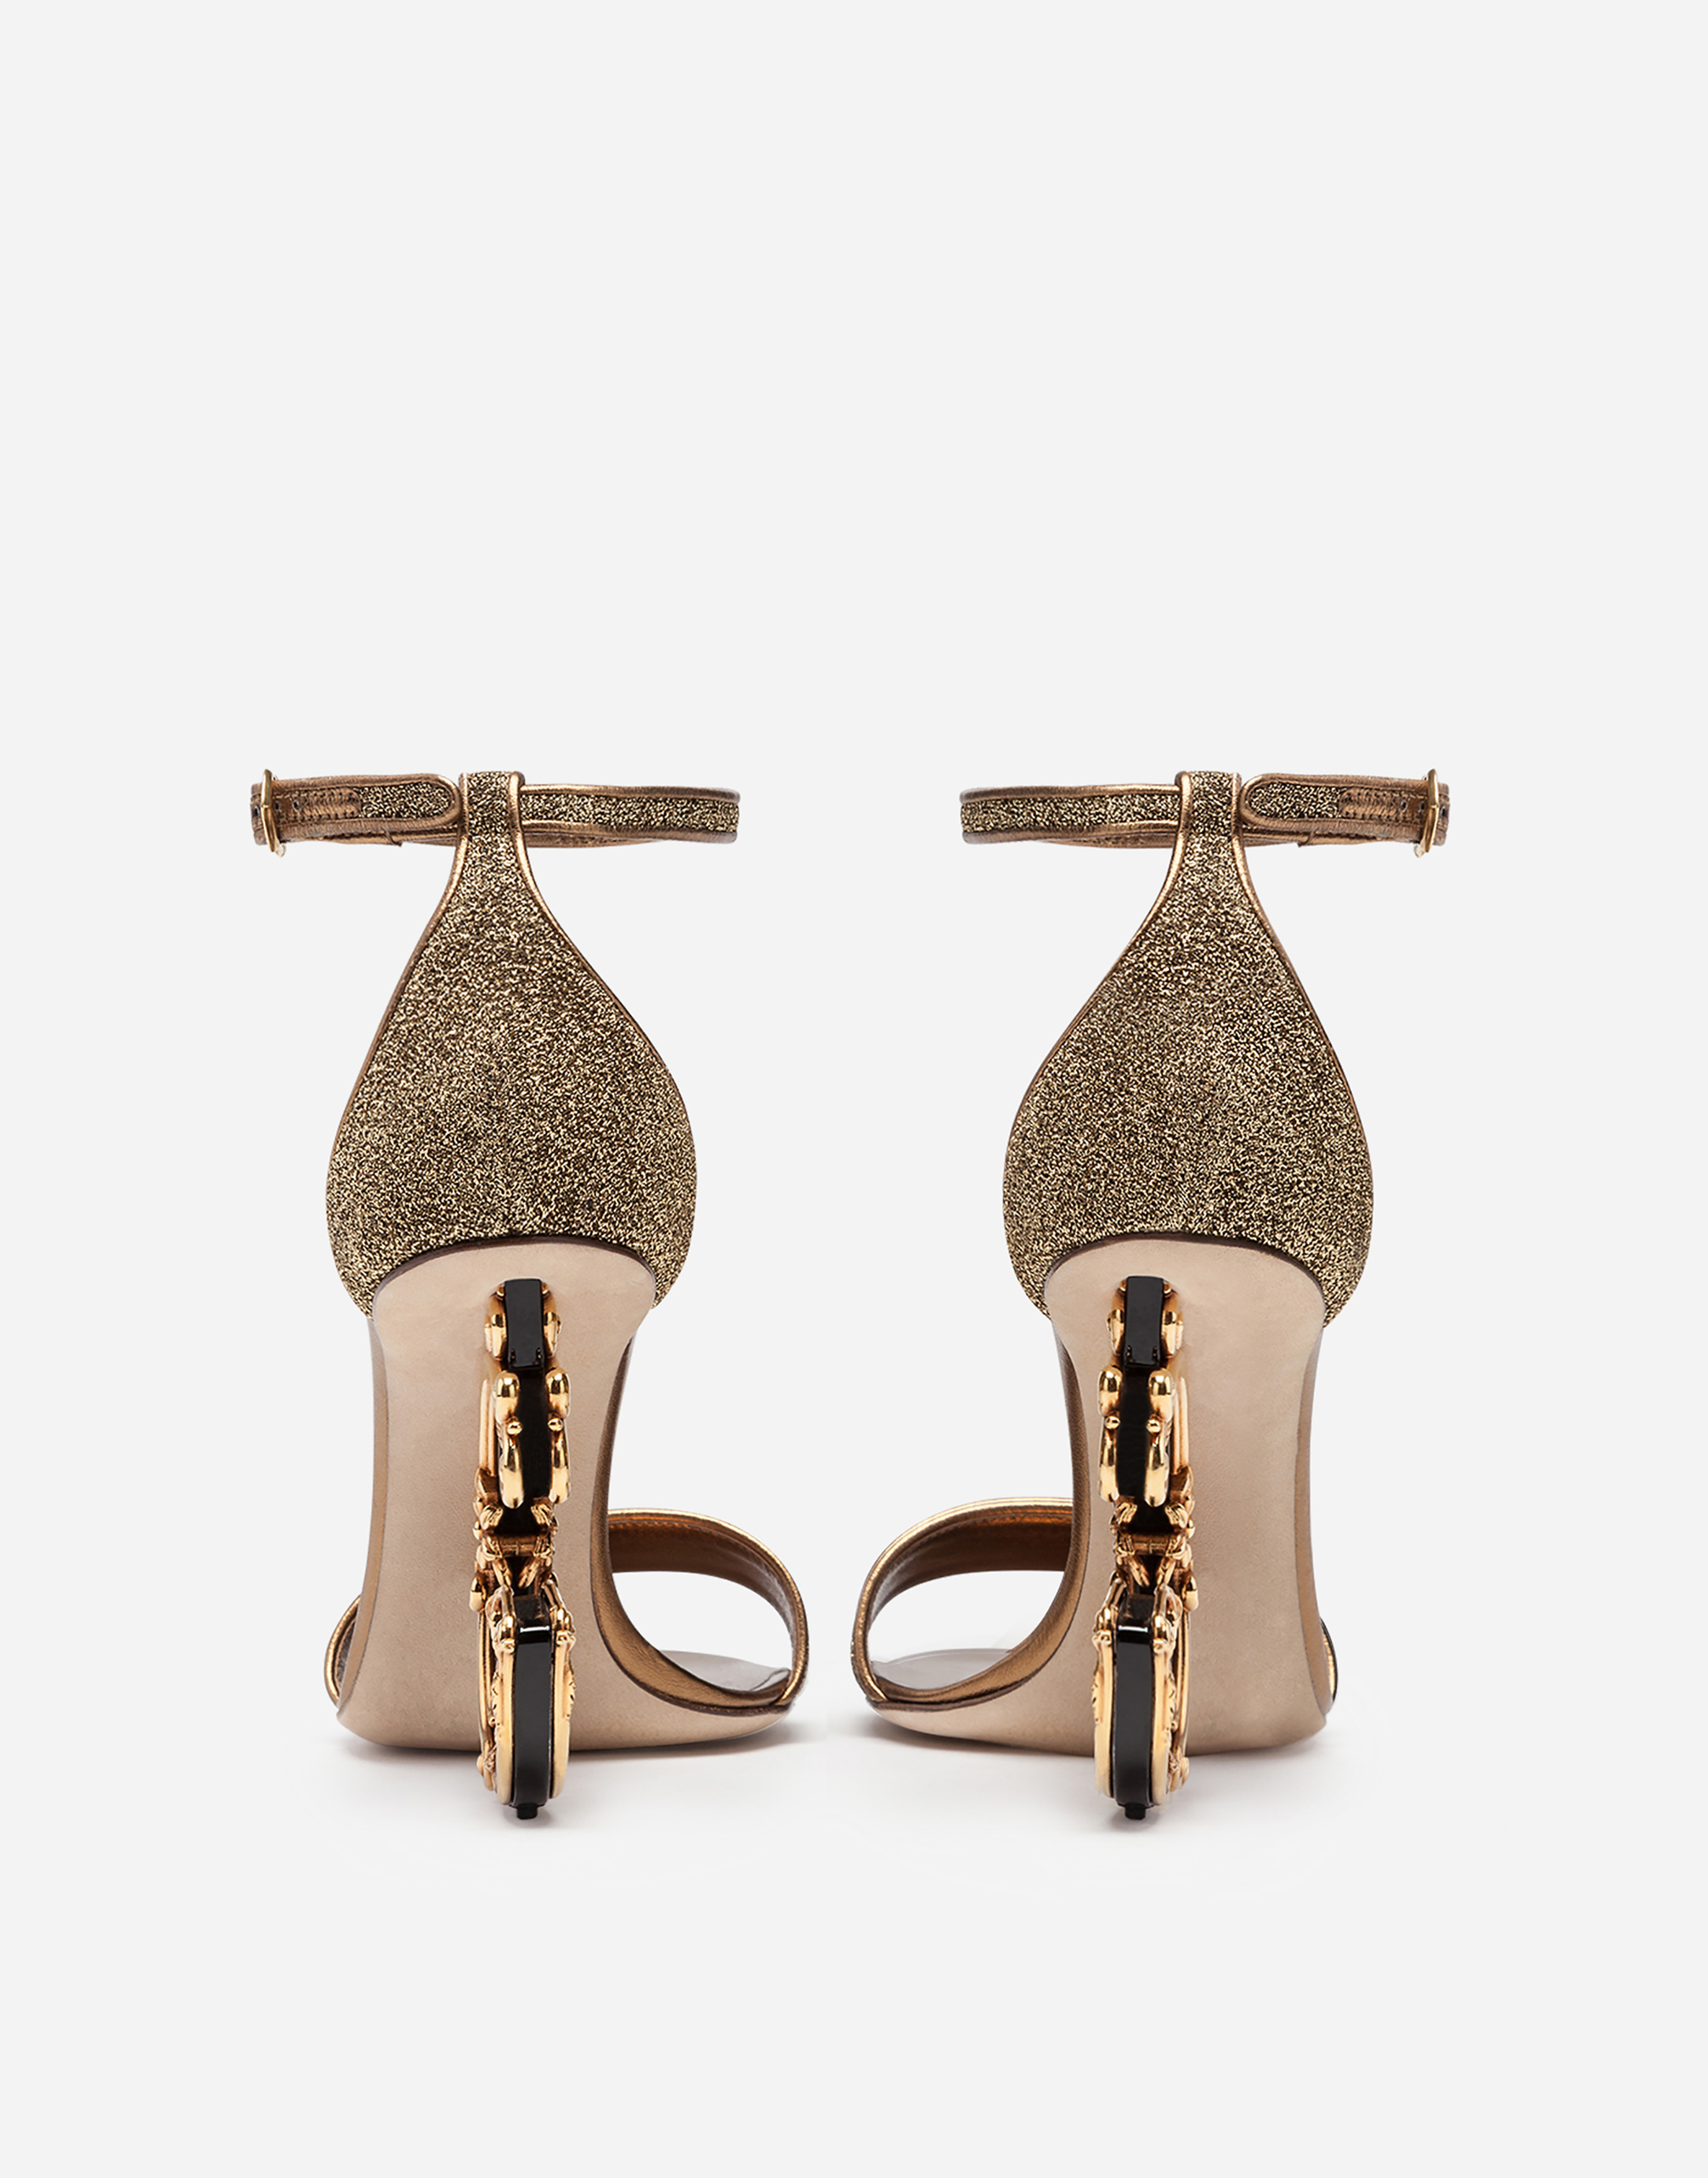 d&g gold heels